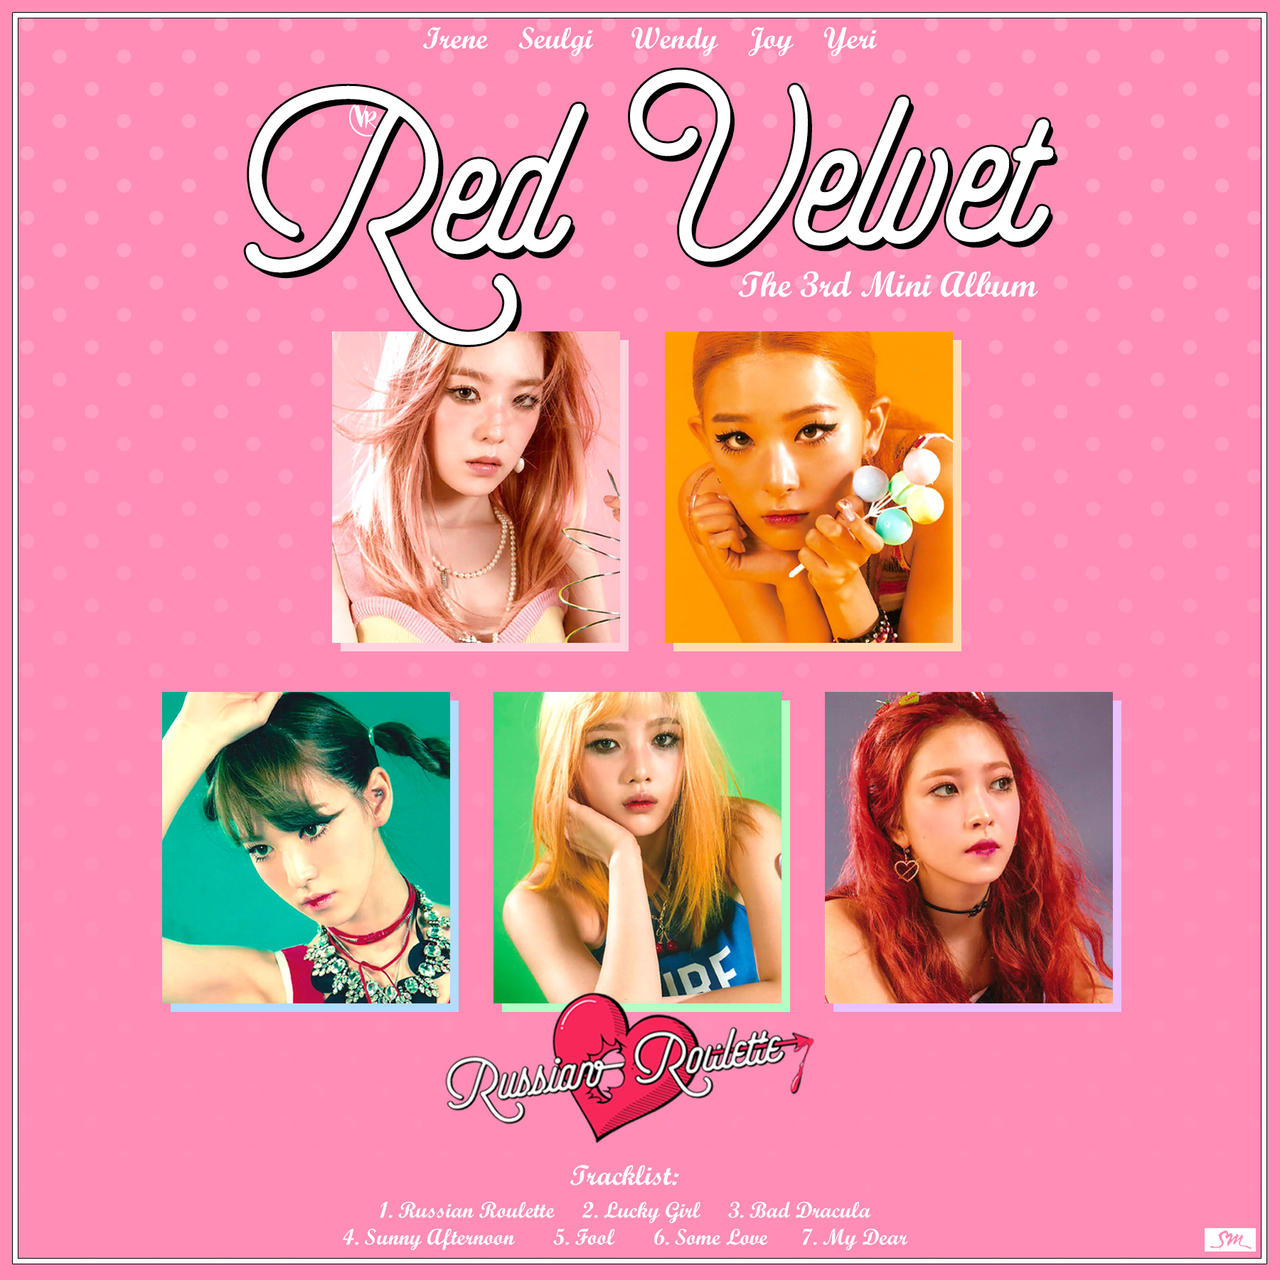 Red Velvet - Russian Roulette (2) by vanessa-van3ss4 on DeviantArt